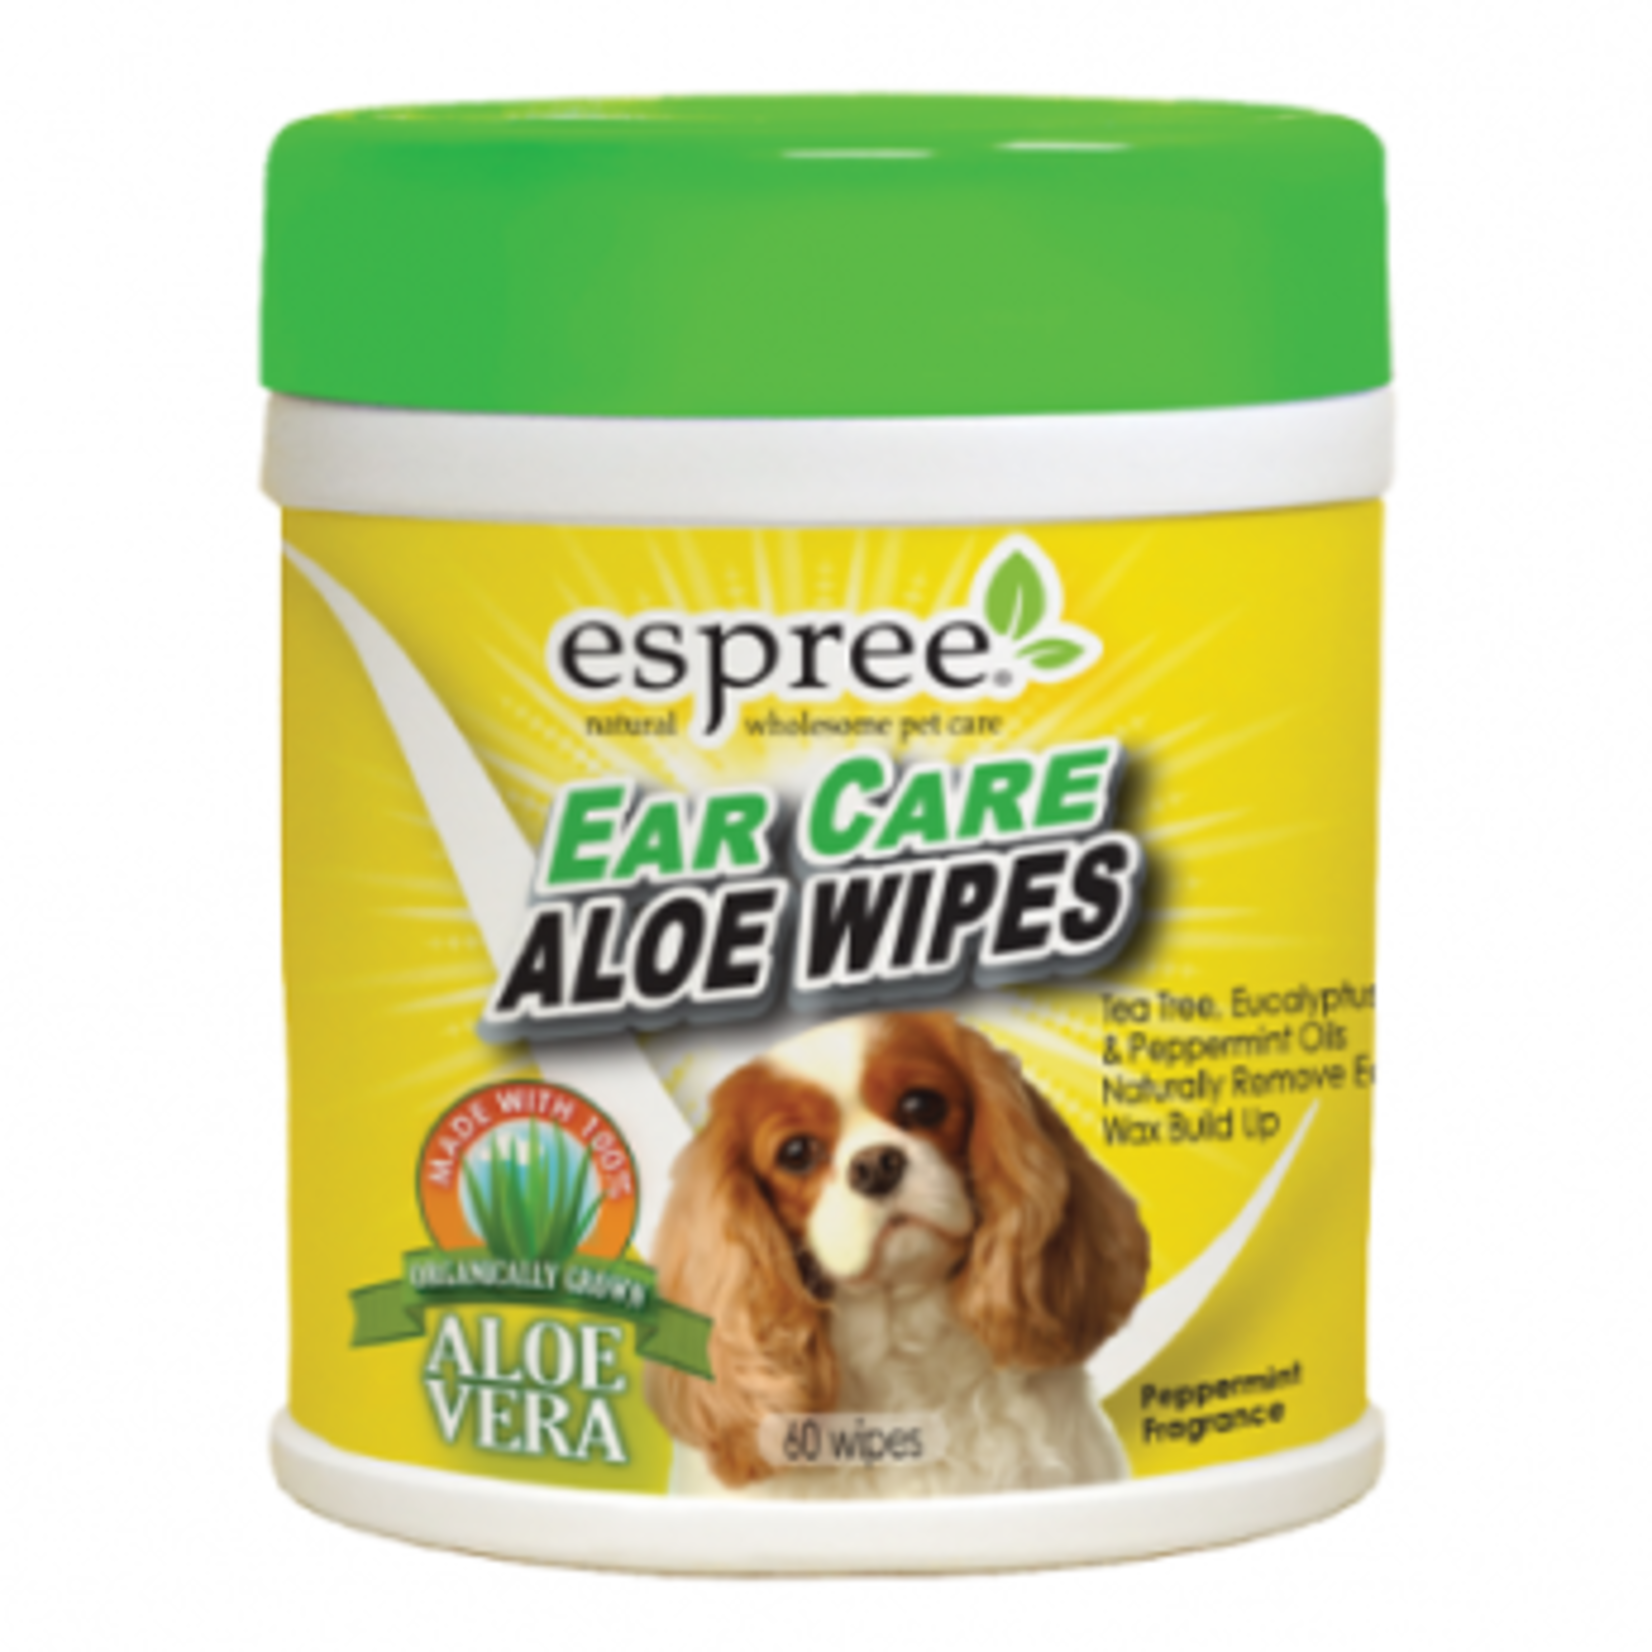 Espree Ear Care - Aloe Wipes - 60 units